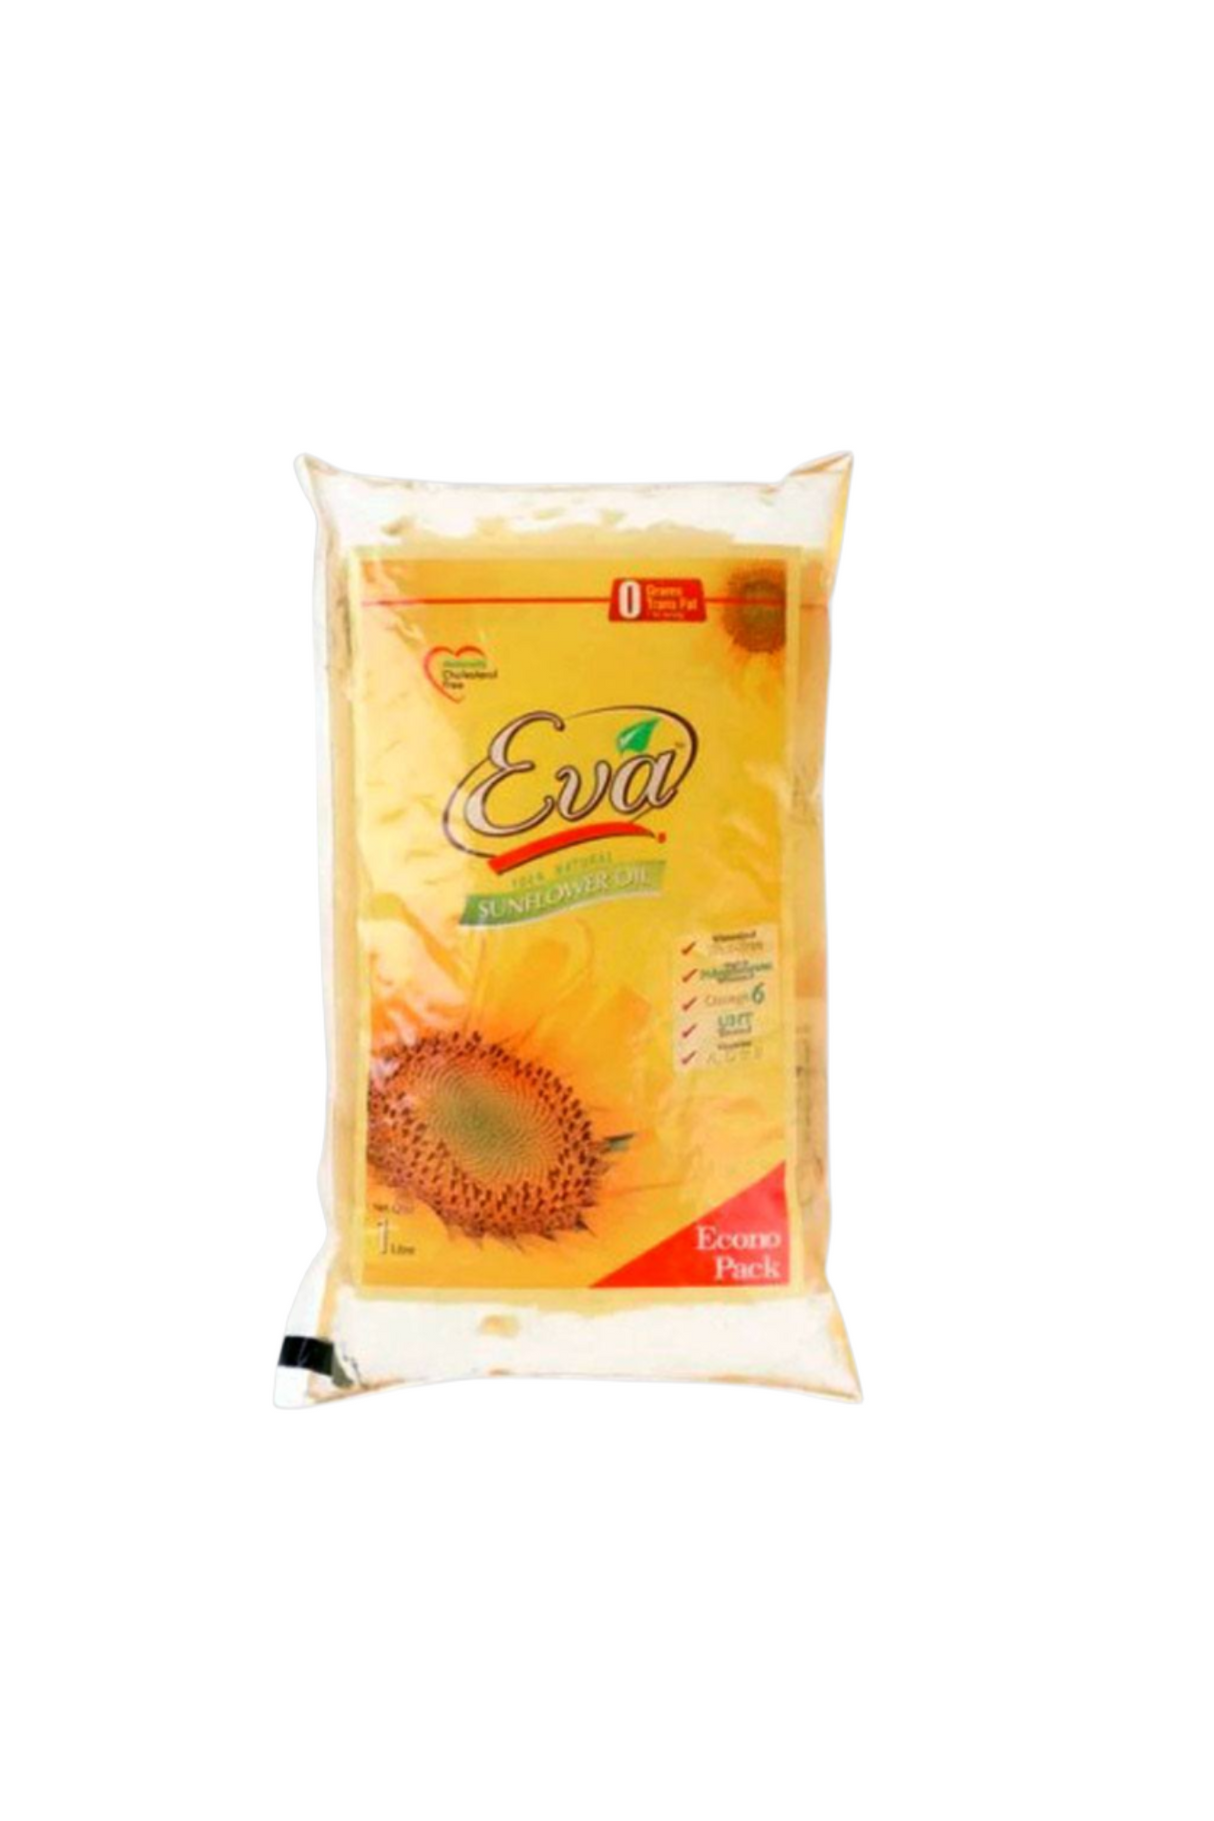 eva sunflower oil 1l pack